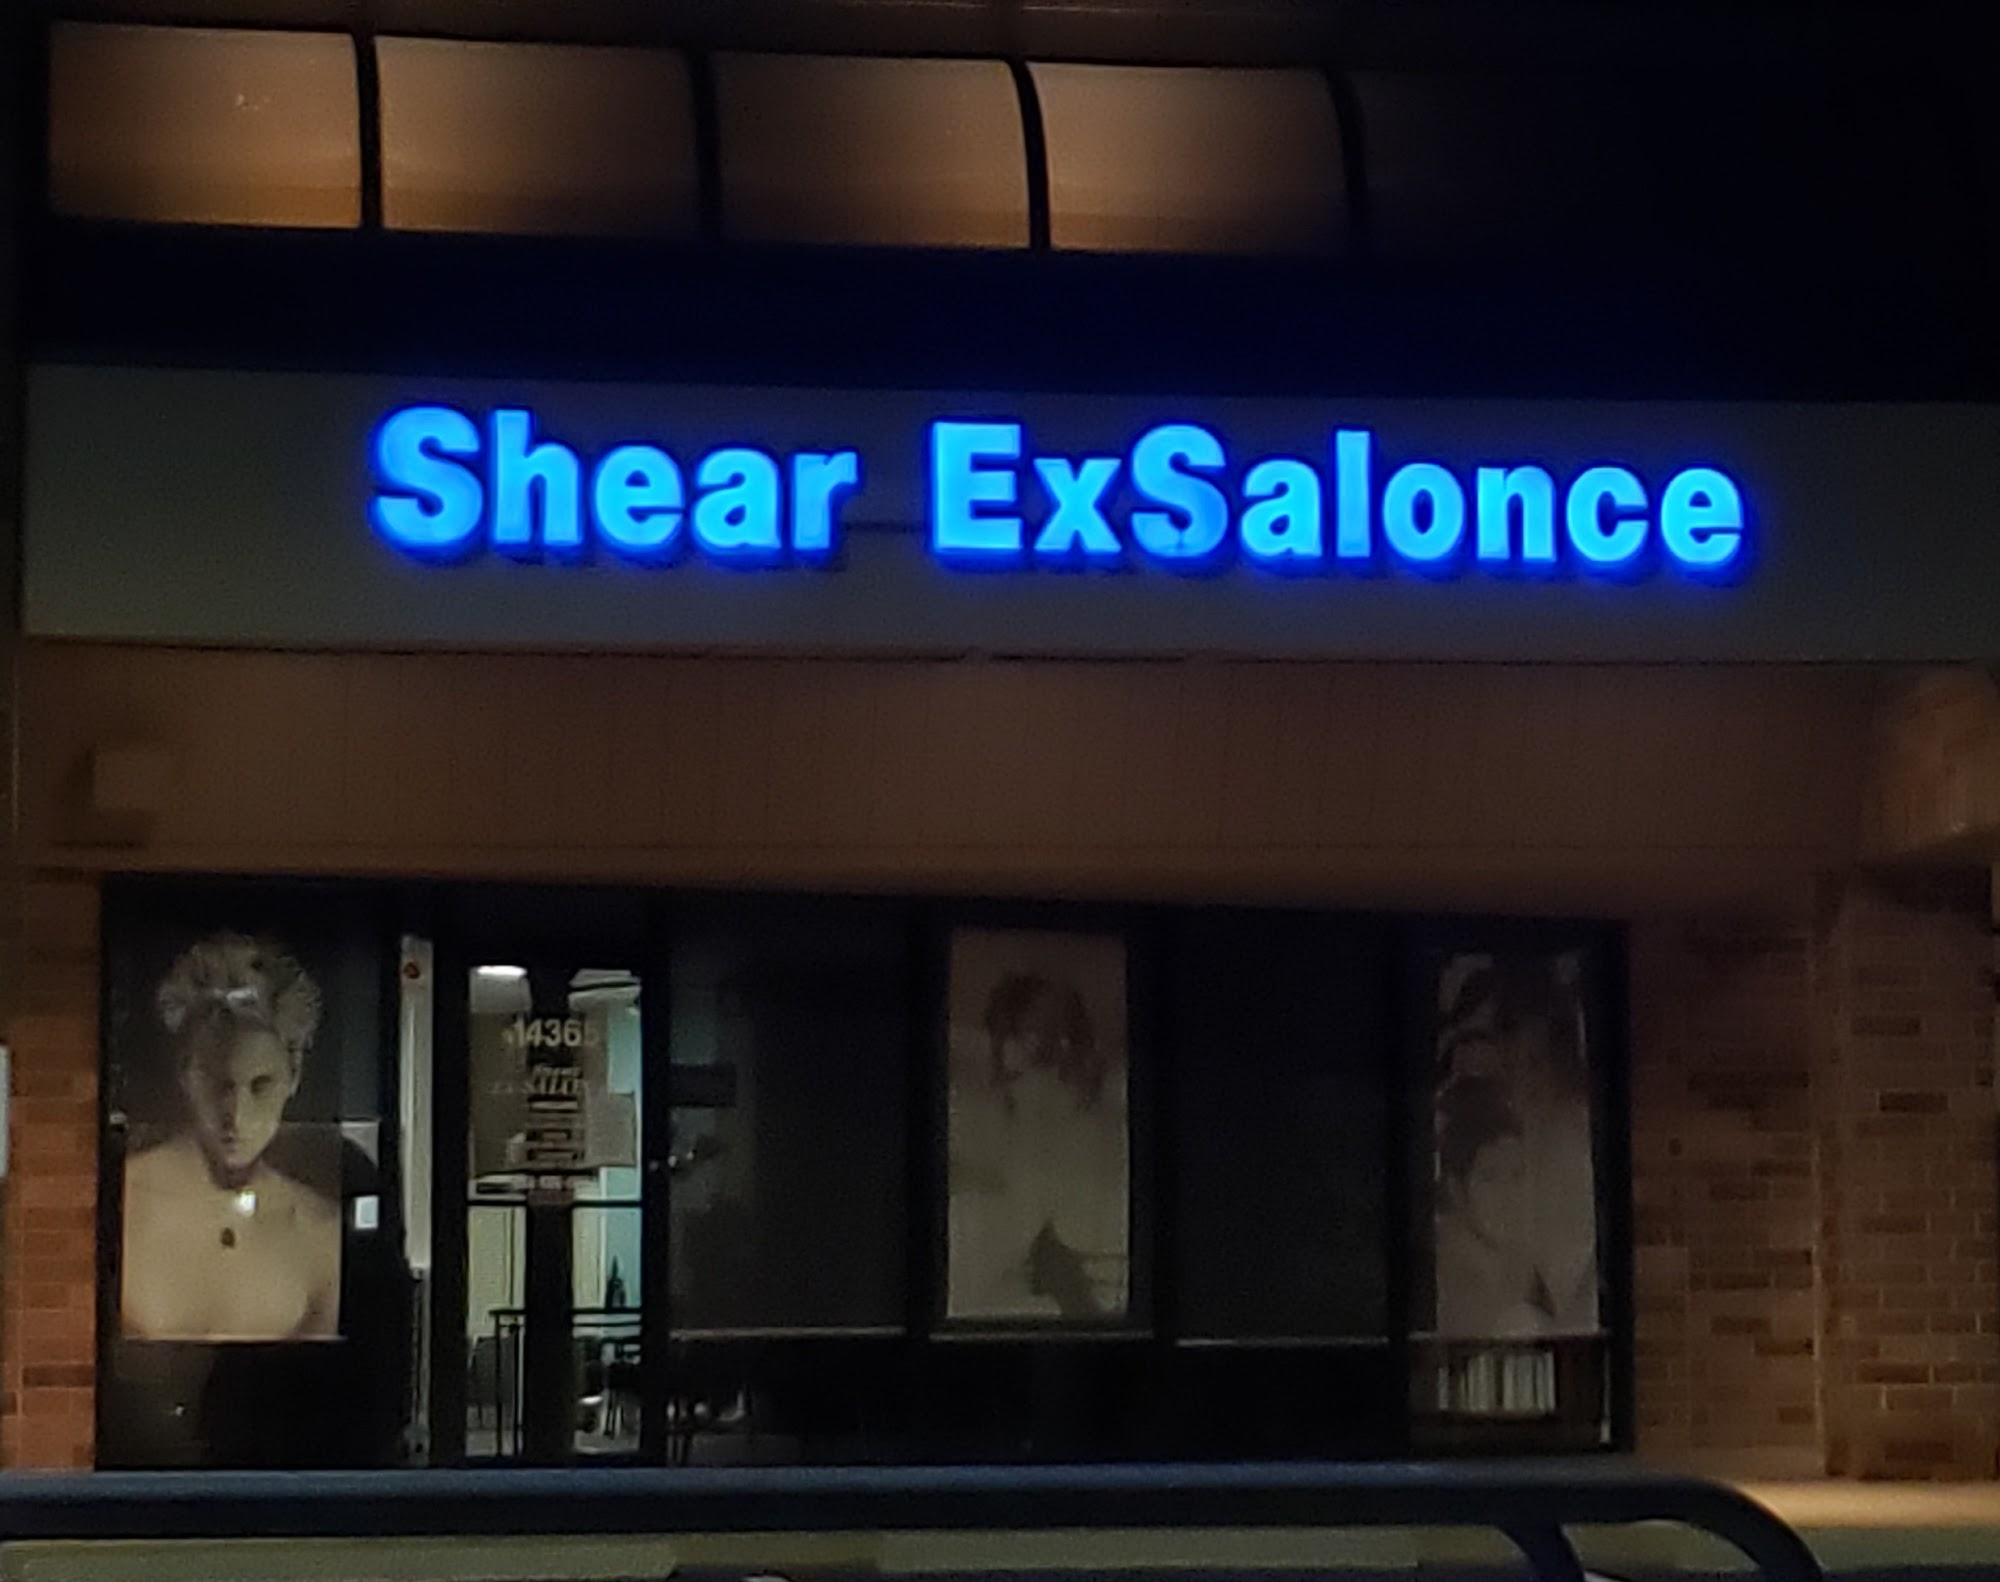 Shear Ex-Salon-Ce